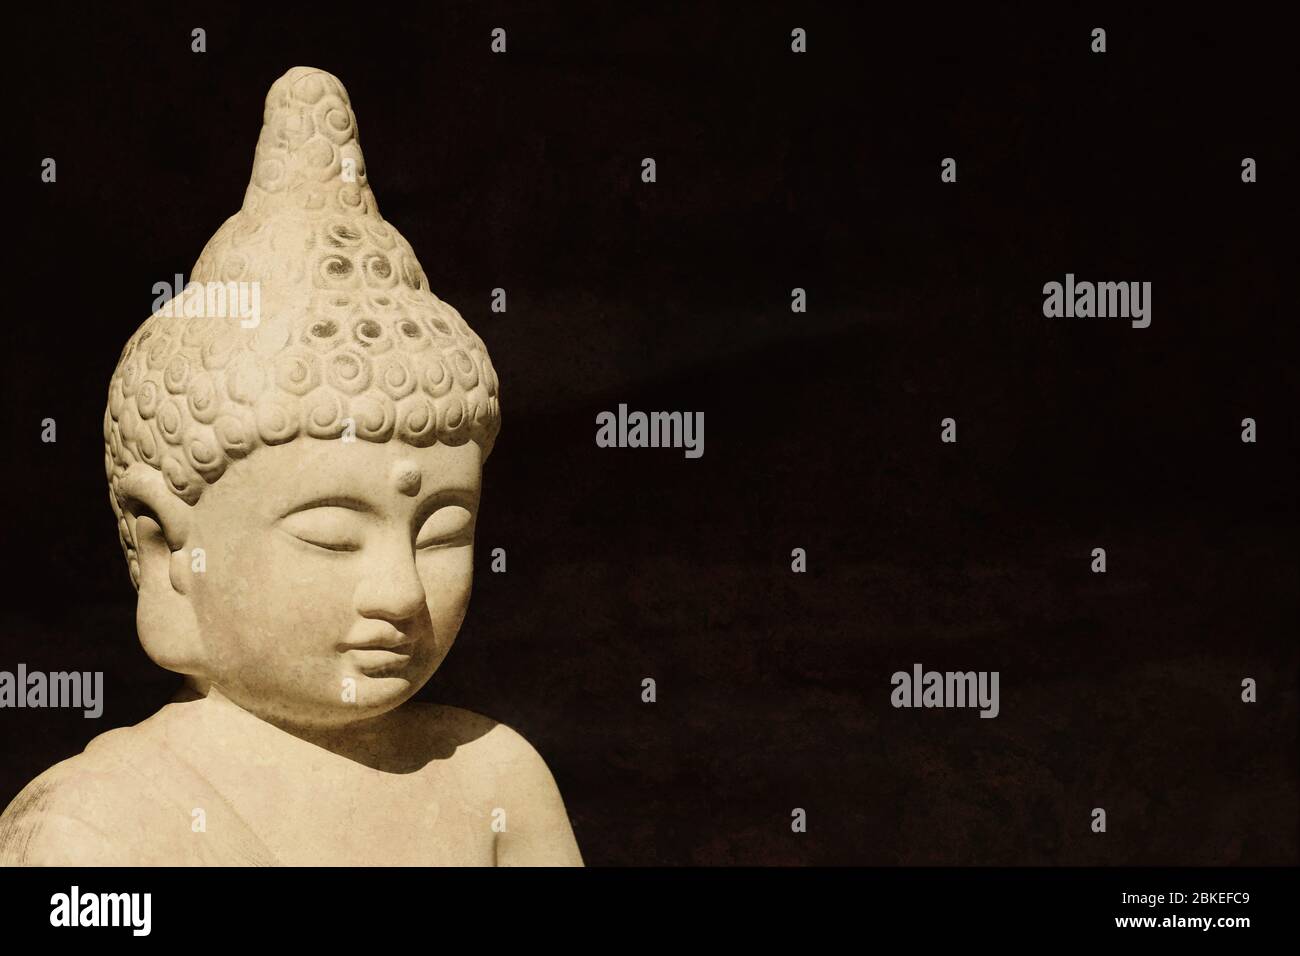 cabeza de estatua de buda hecha de piedra - budismo meditación iluminación religión fe y espiritualidad concepto - fondo negro con espacio de copia Foto de stock